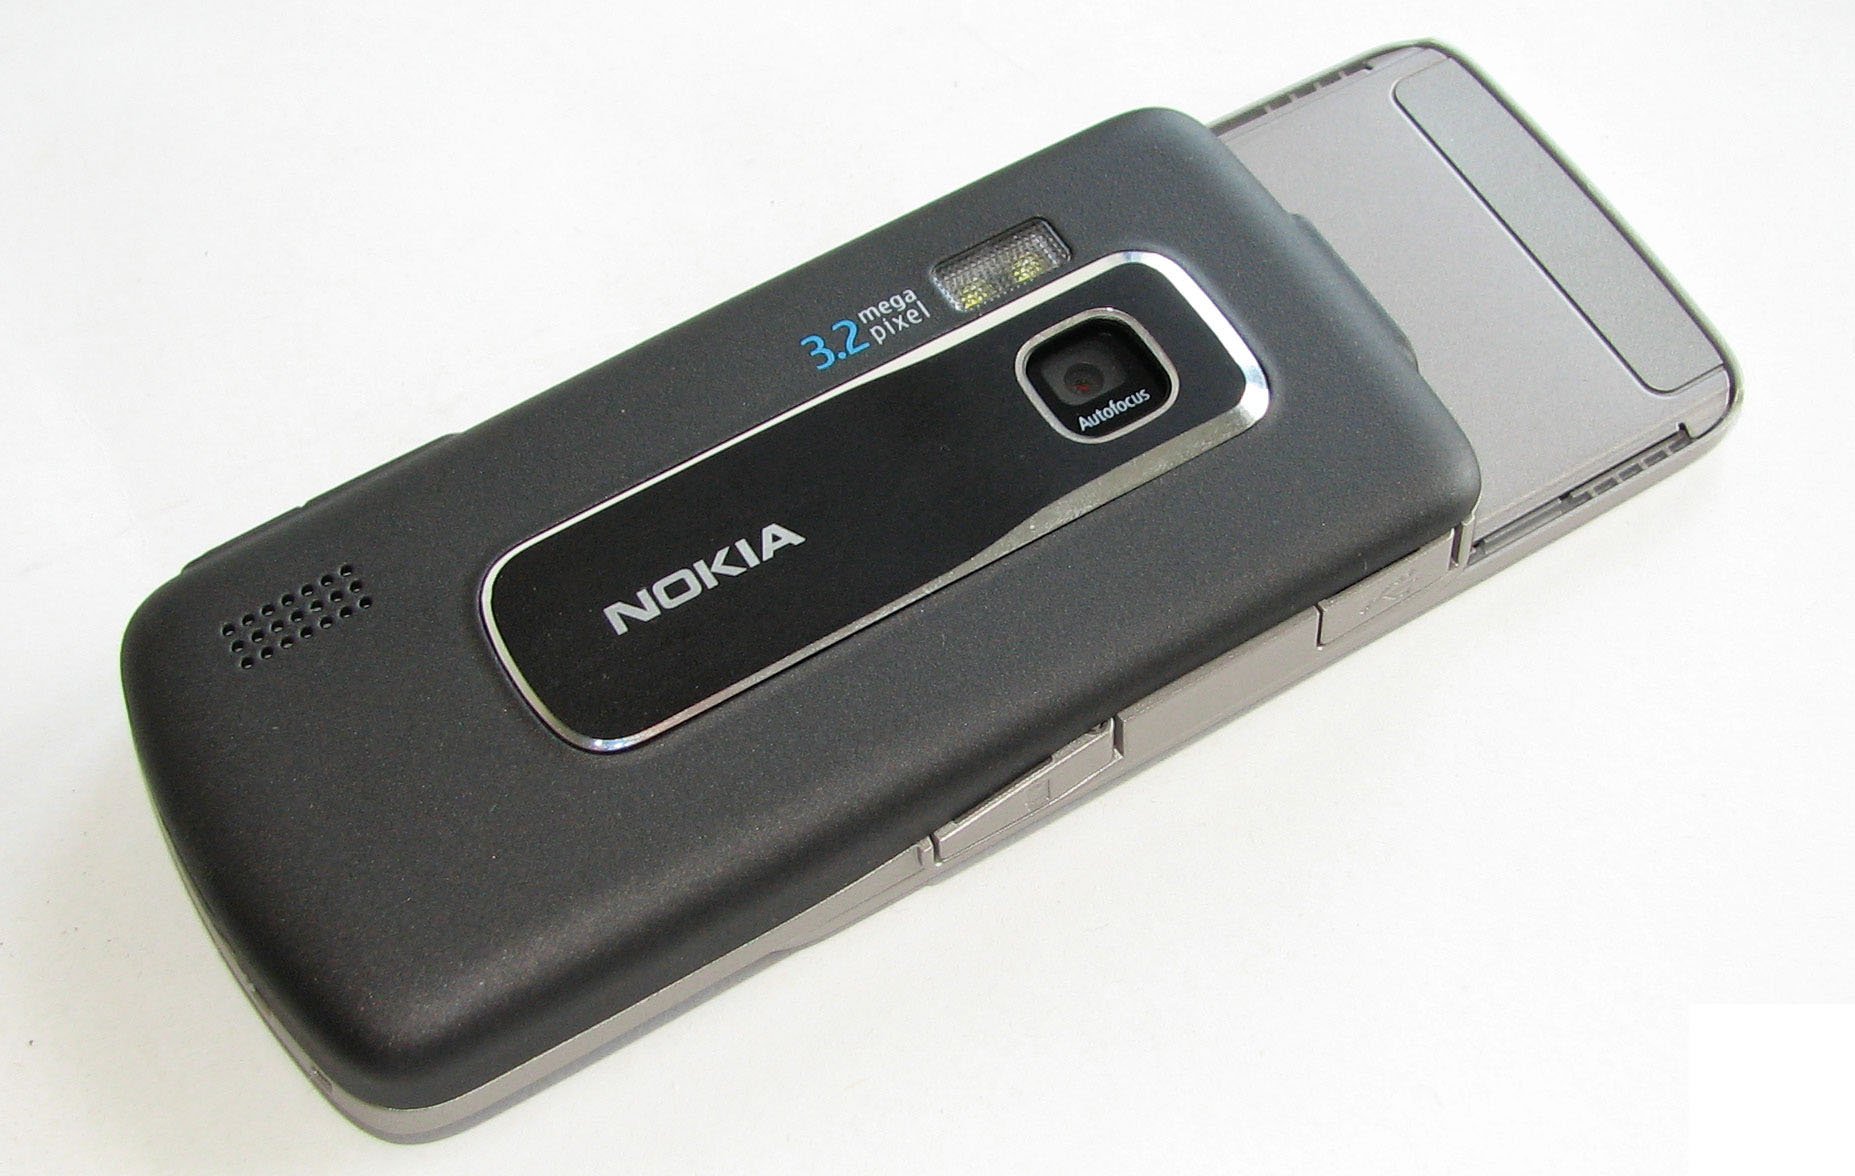 Nokia 6210 Navigator specs - PhoneArena